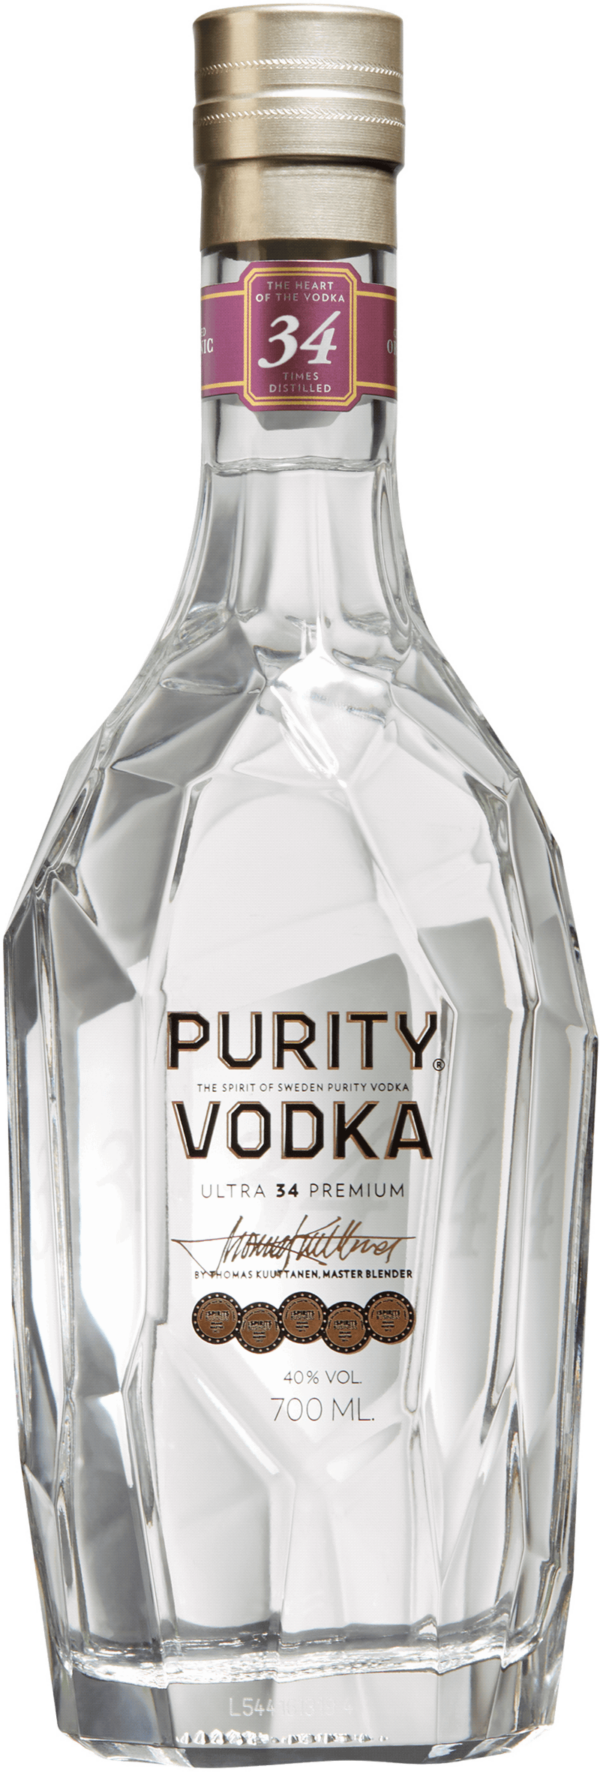 Purity Vodka Ultra 34 Premium. En Vodka och Brännvin av typen Vodka i en 700 Flaska från Skåne län